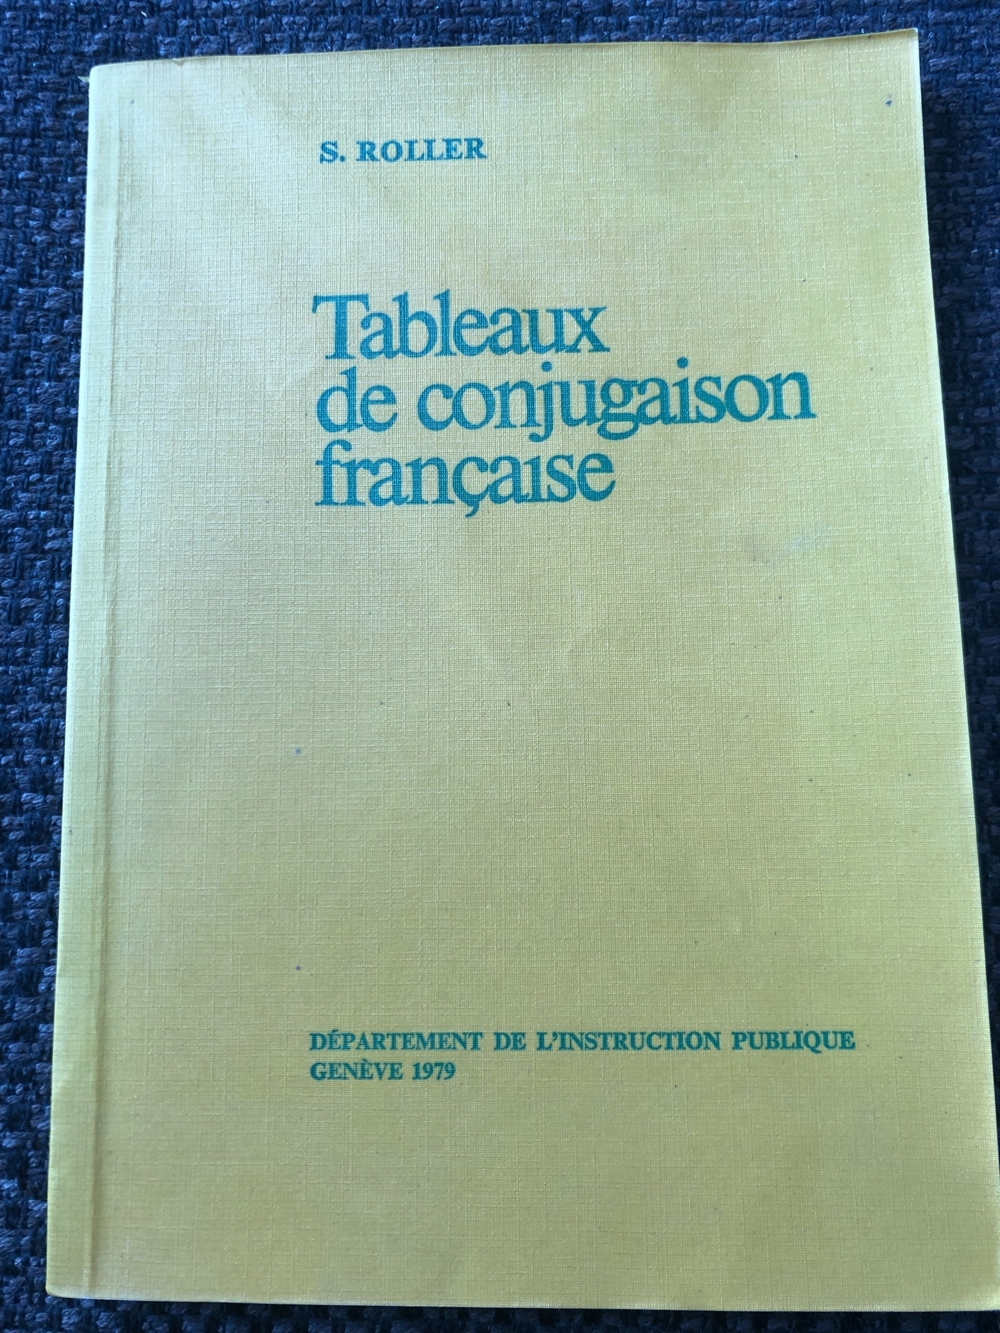 Tableaux de conjugaison francaise